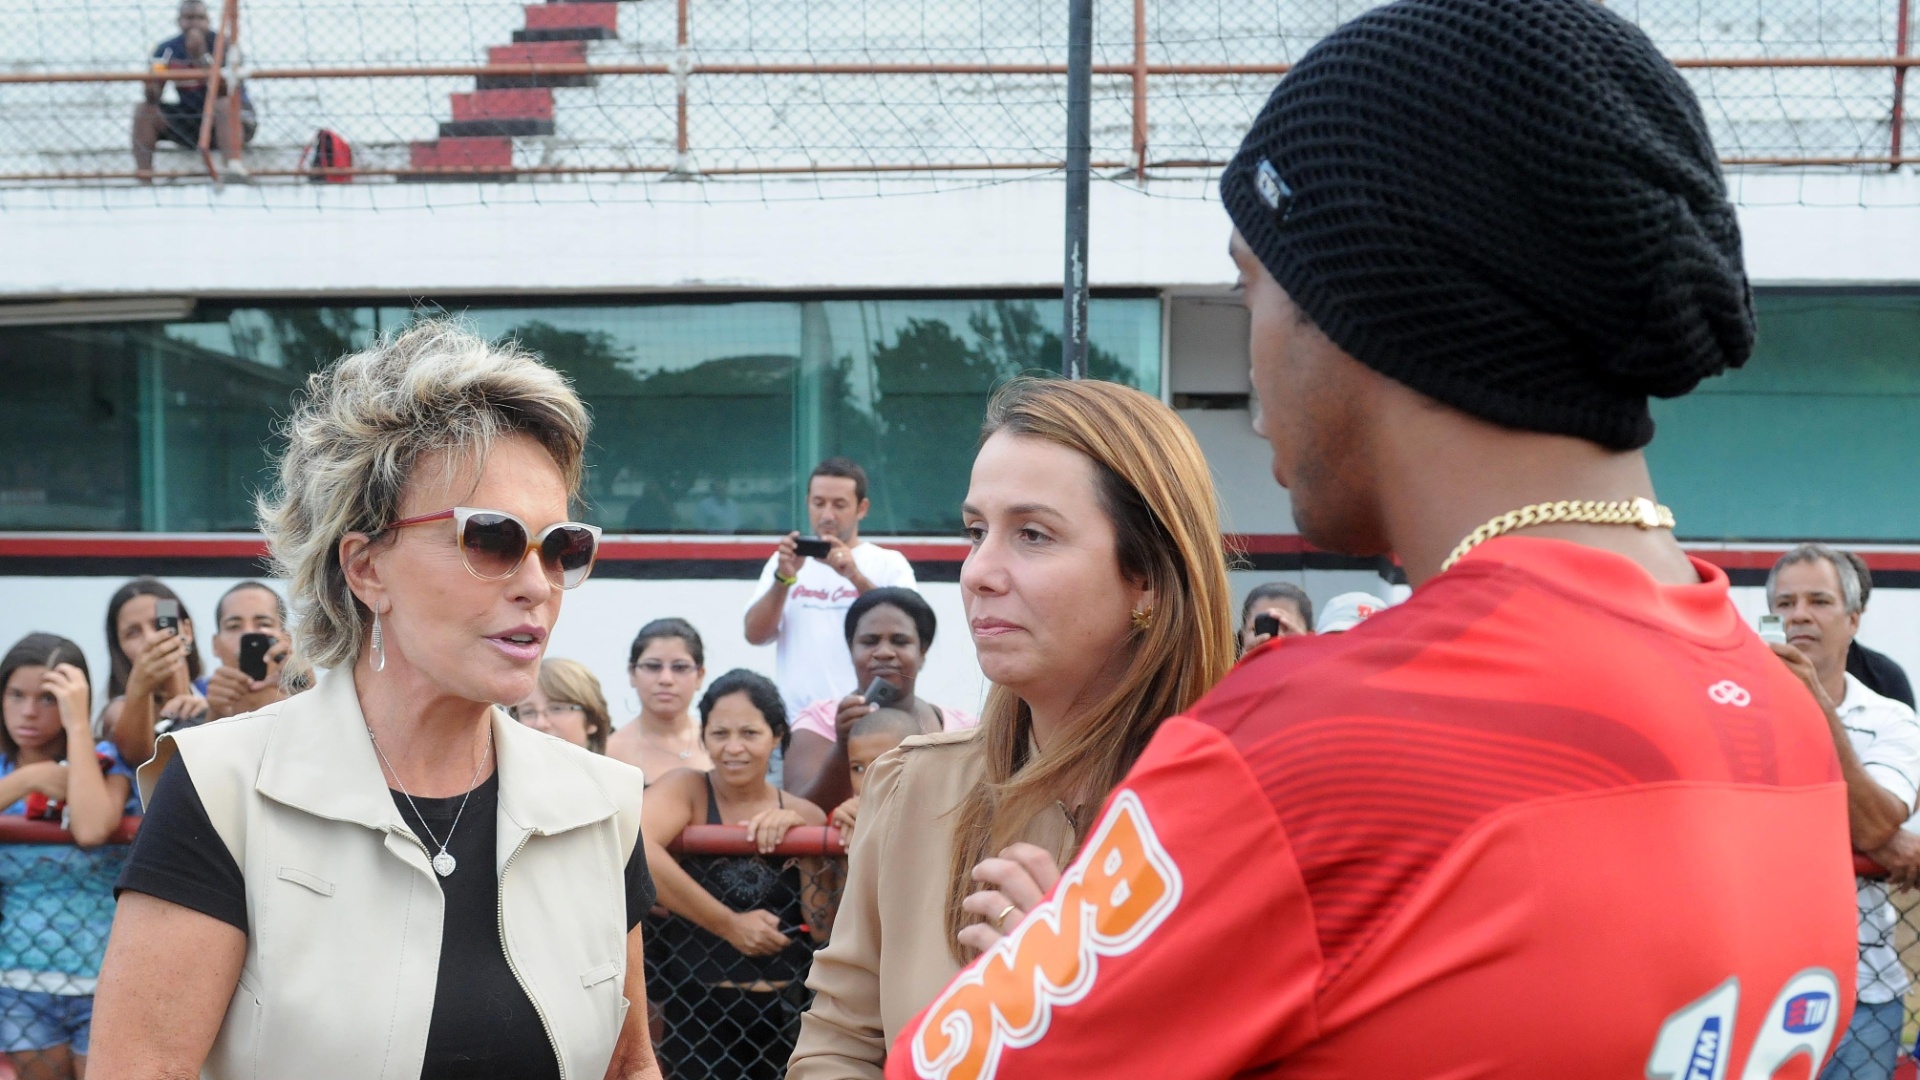 Ana Maria Braga, Patrícia Amorim e Ronaldinho Gaúcho conversam na Gávea